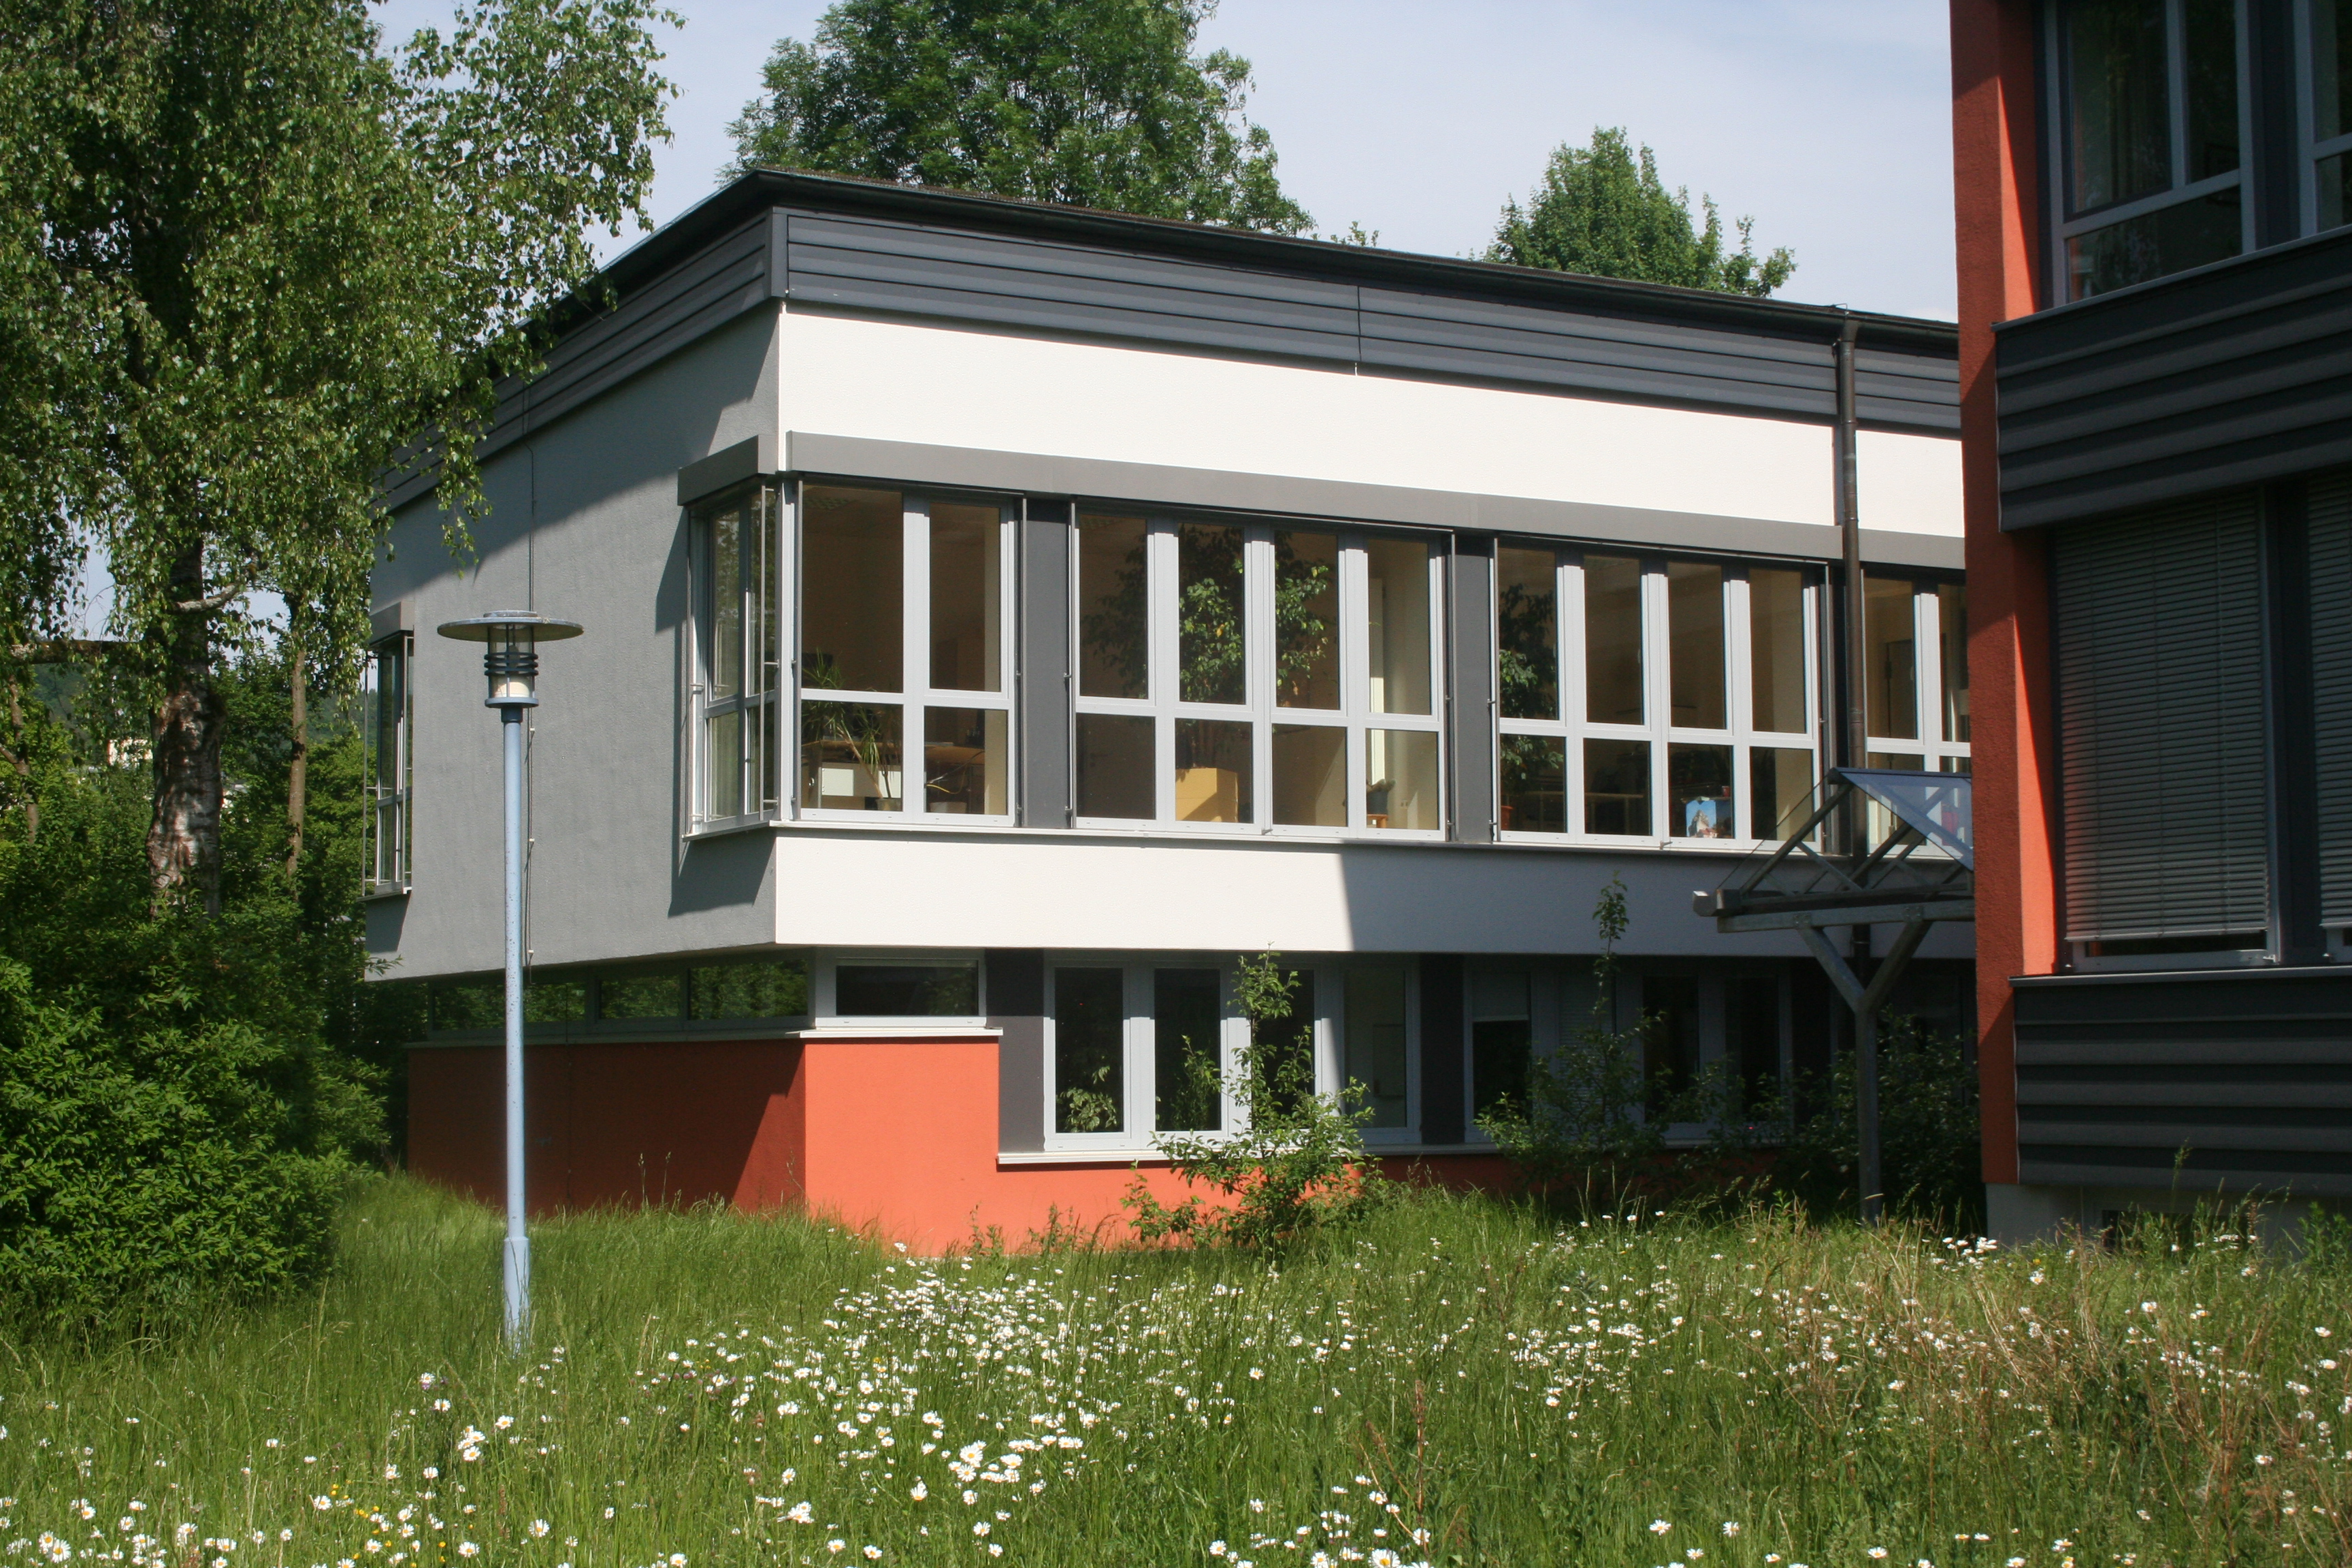 Abb. 4: Das Gebäude, in dem die Tourismuszentrale Fränkische Schweiz untergebracht ist, ist der hier abgebildete ehemalige Sitzungssaal des Landratsamtes Ebermannstadt.